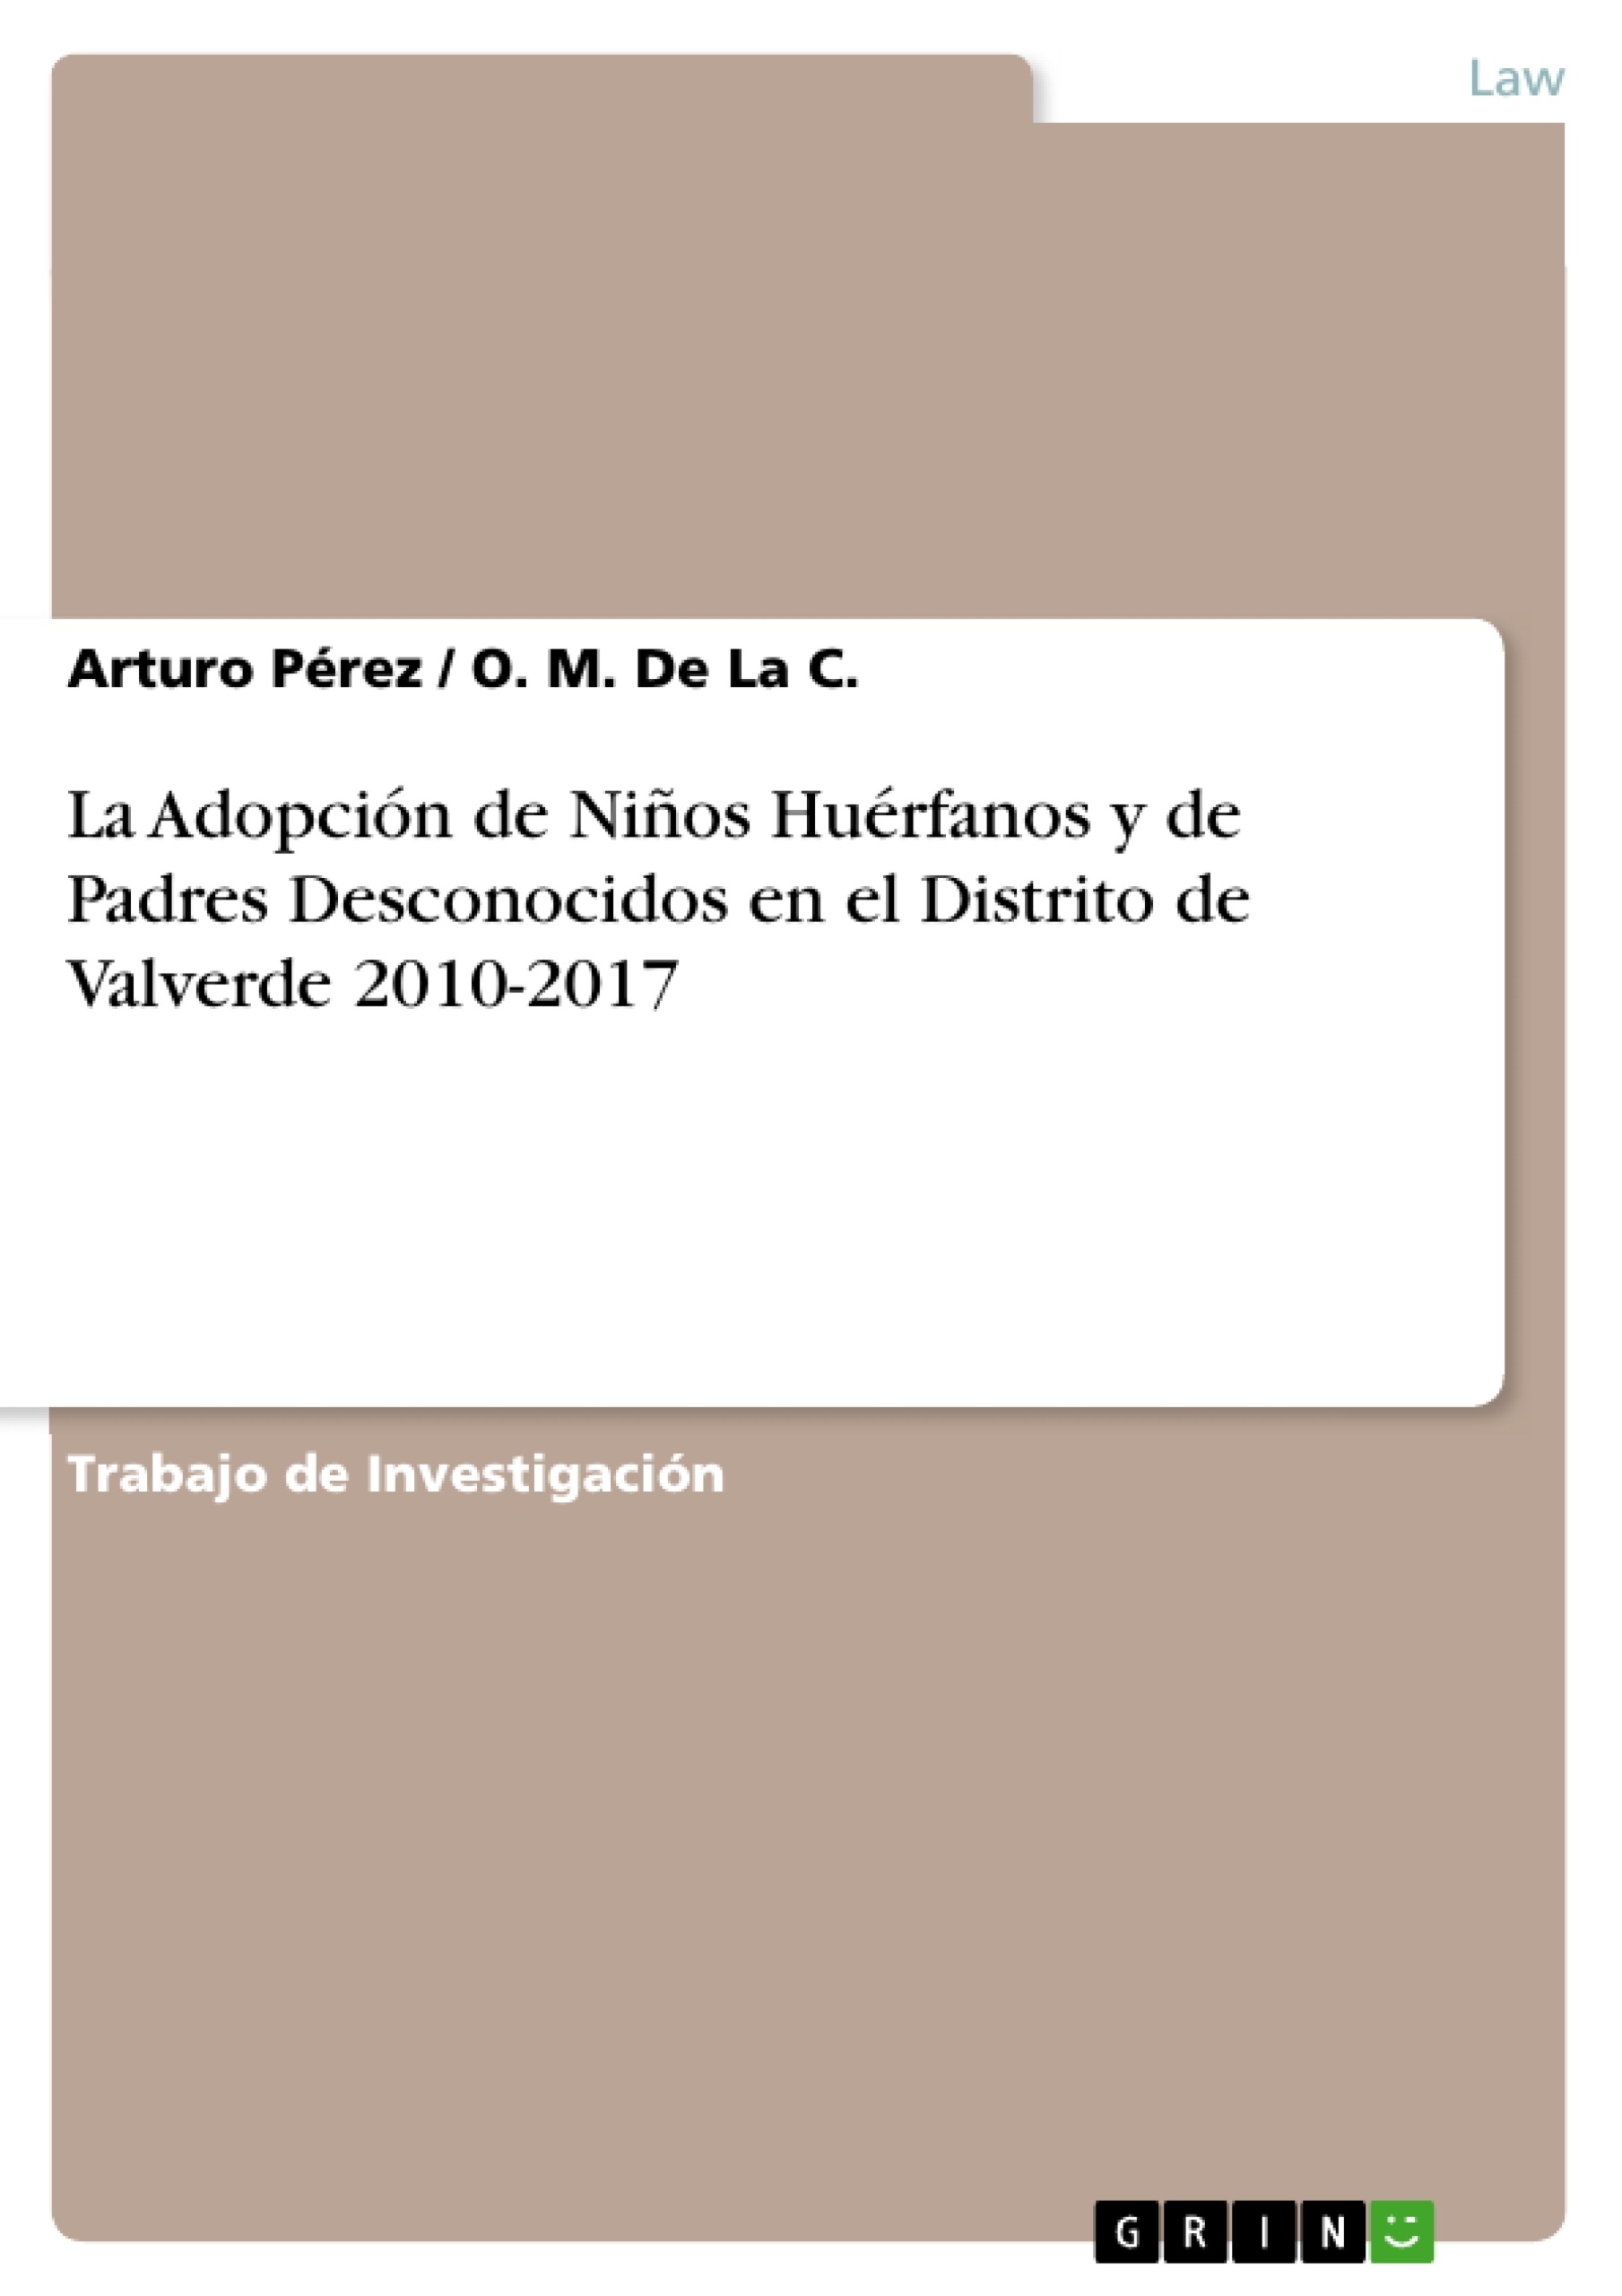 Titel: La Adopción de Niños Huérfanos y de Padres Desconocidos en el Distrito de Valverde 2010-2017